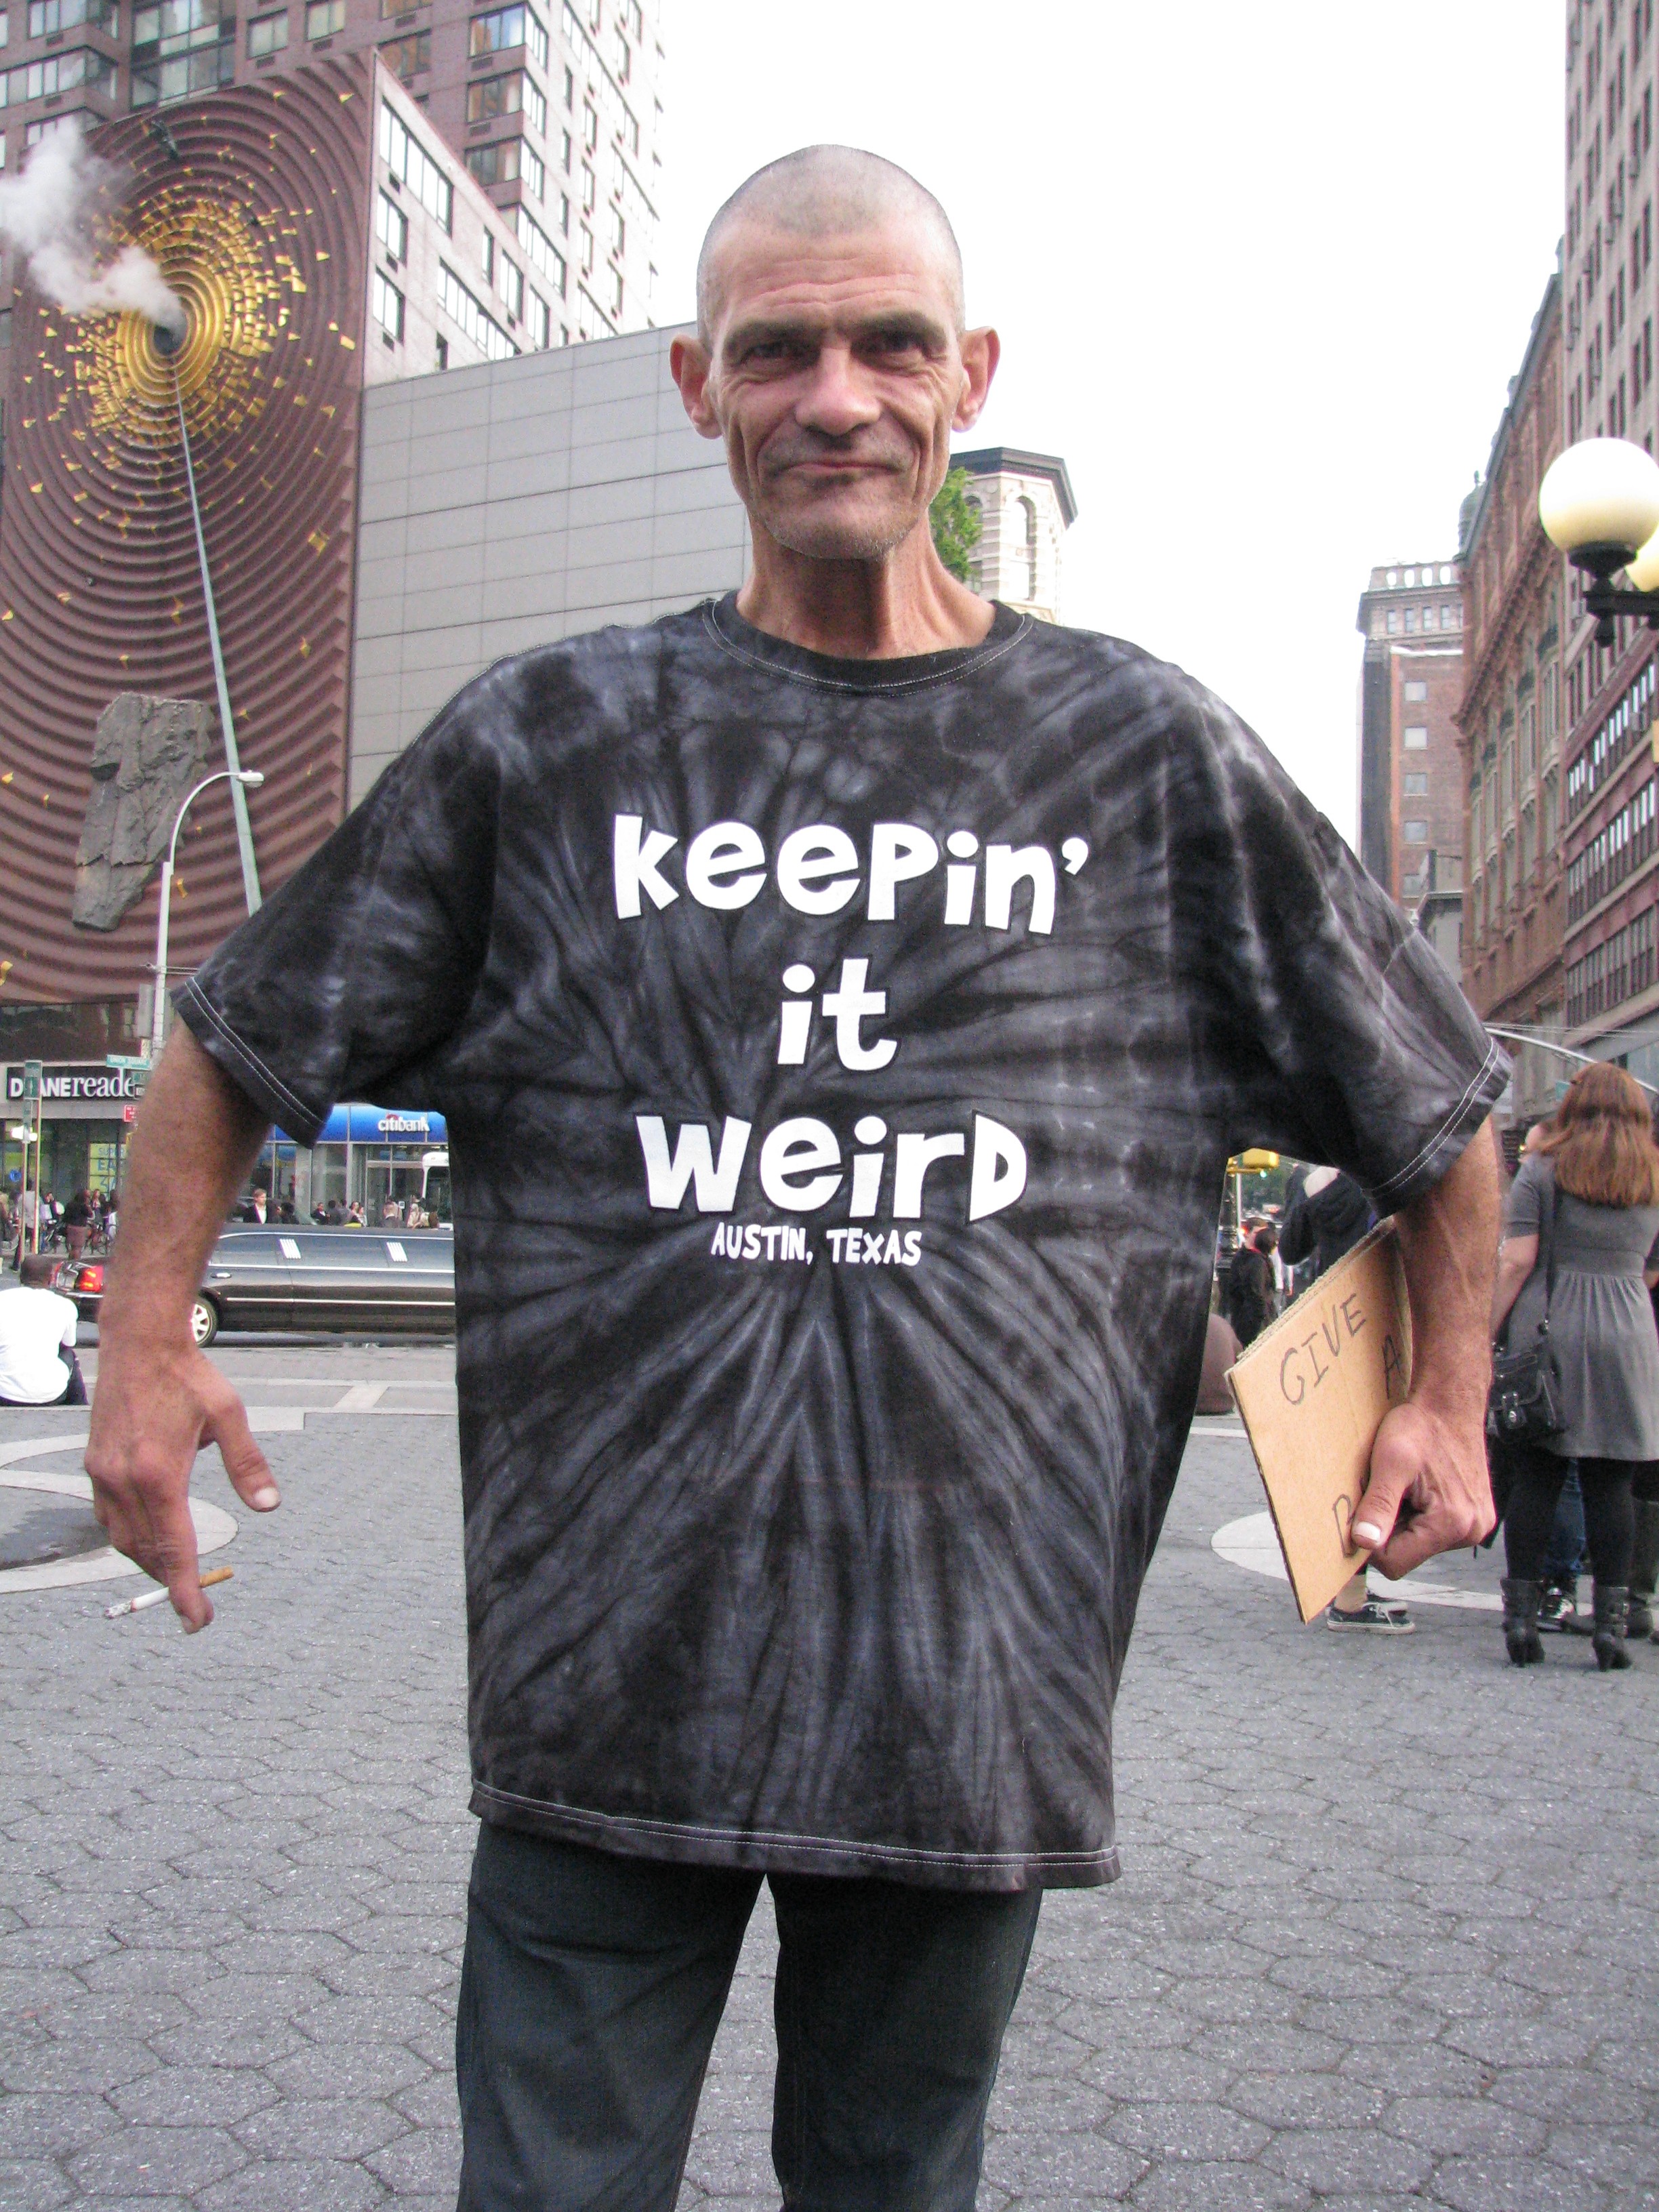 bum in "Keepin it weird" shirt